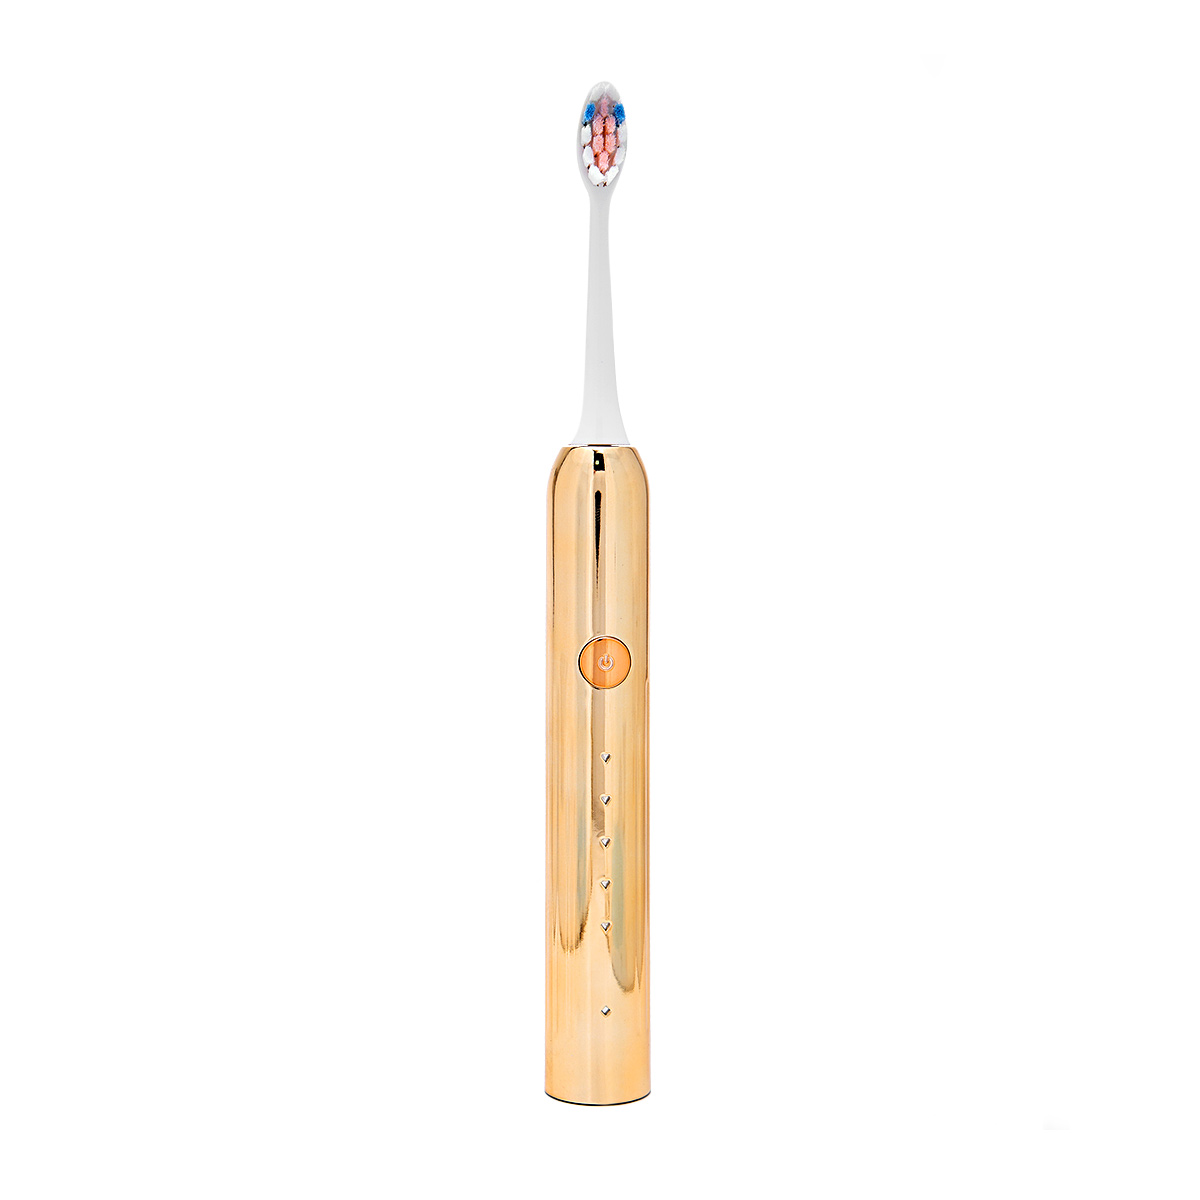 Электрическая зубная щетка Yojeong золотая со сменными насадками (3 насадки) электрическая зубная щетка yojeong золотая со сменными насадками 3 насадки